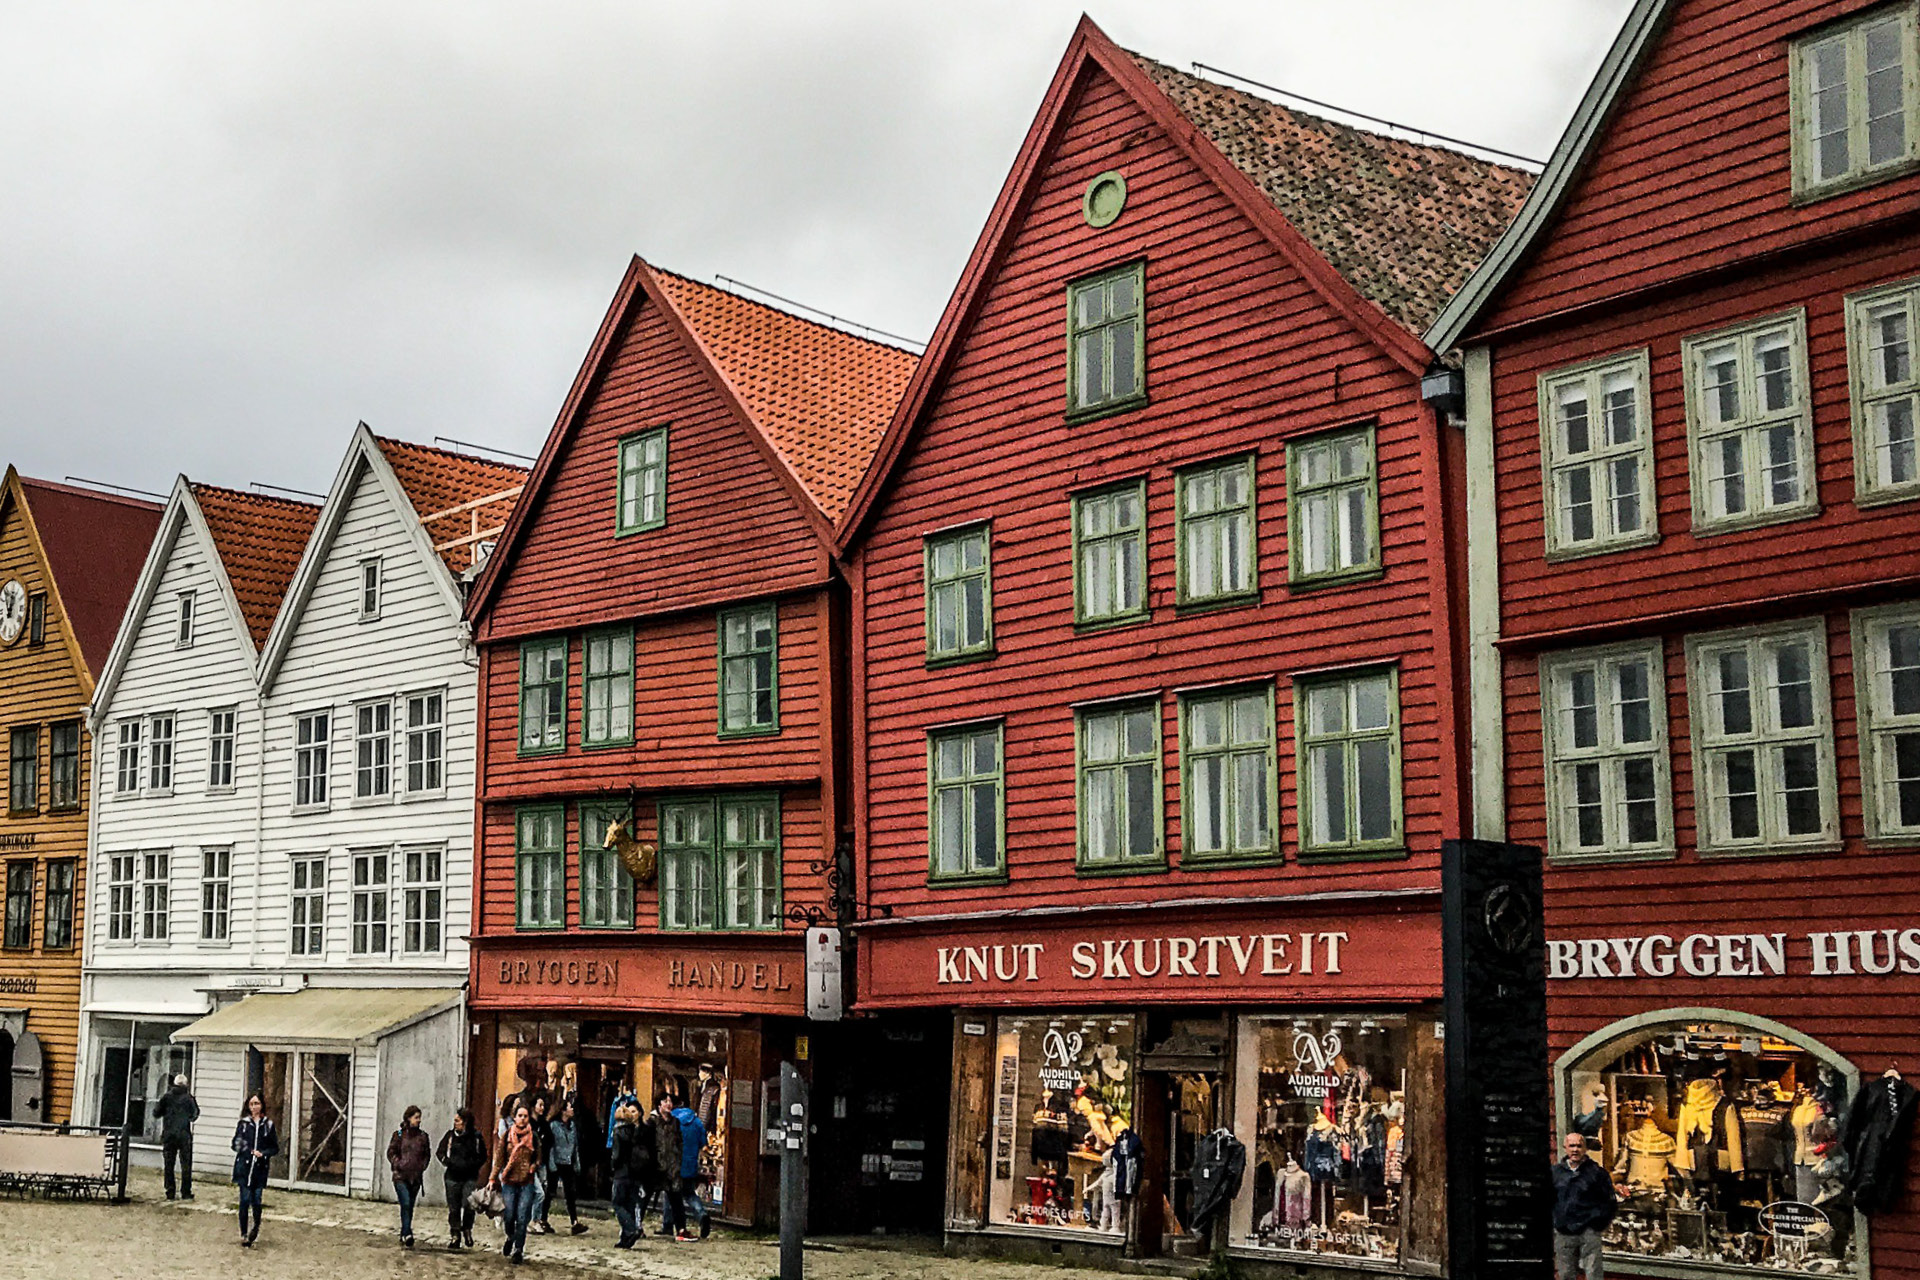 Eine Einkaufsstrasse in Bergen, Norwegen, mit typischen farbigen, alten Holzhäusern. Die Geschäfte sind beschriftet in norwegischer Sprache.